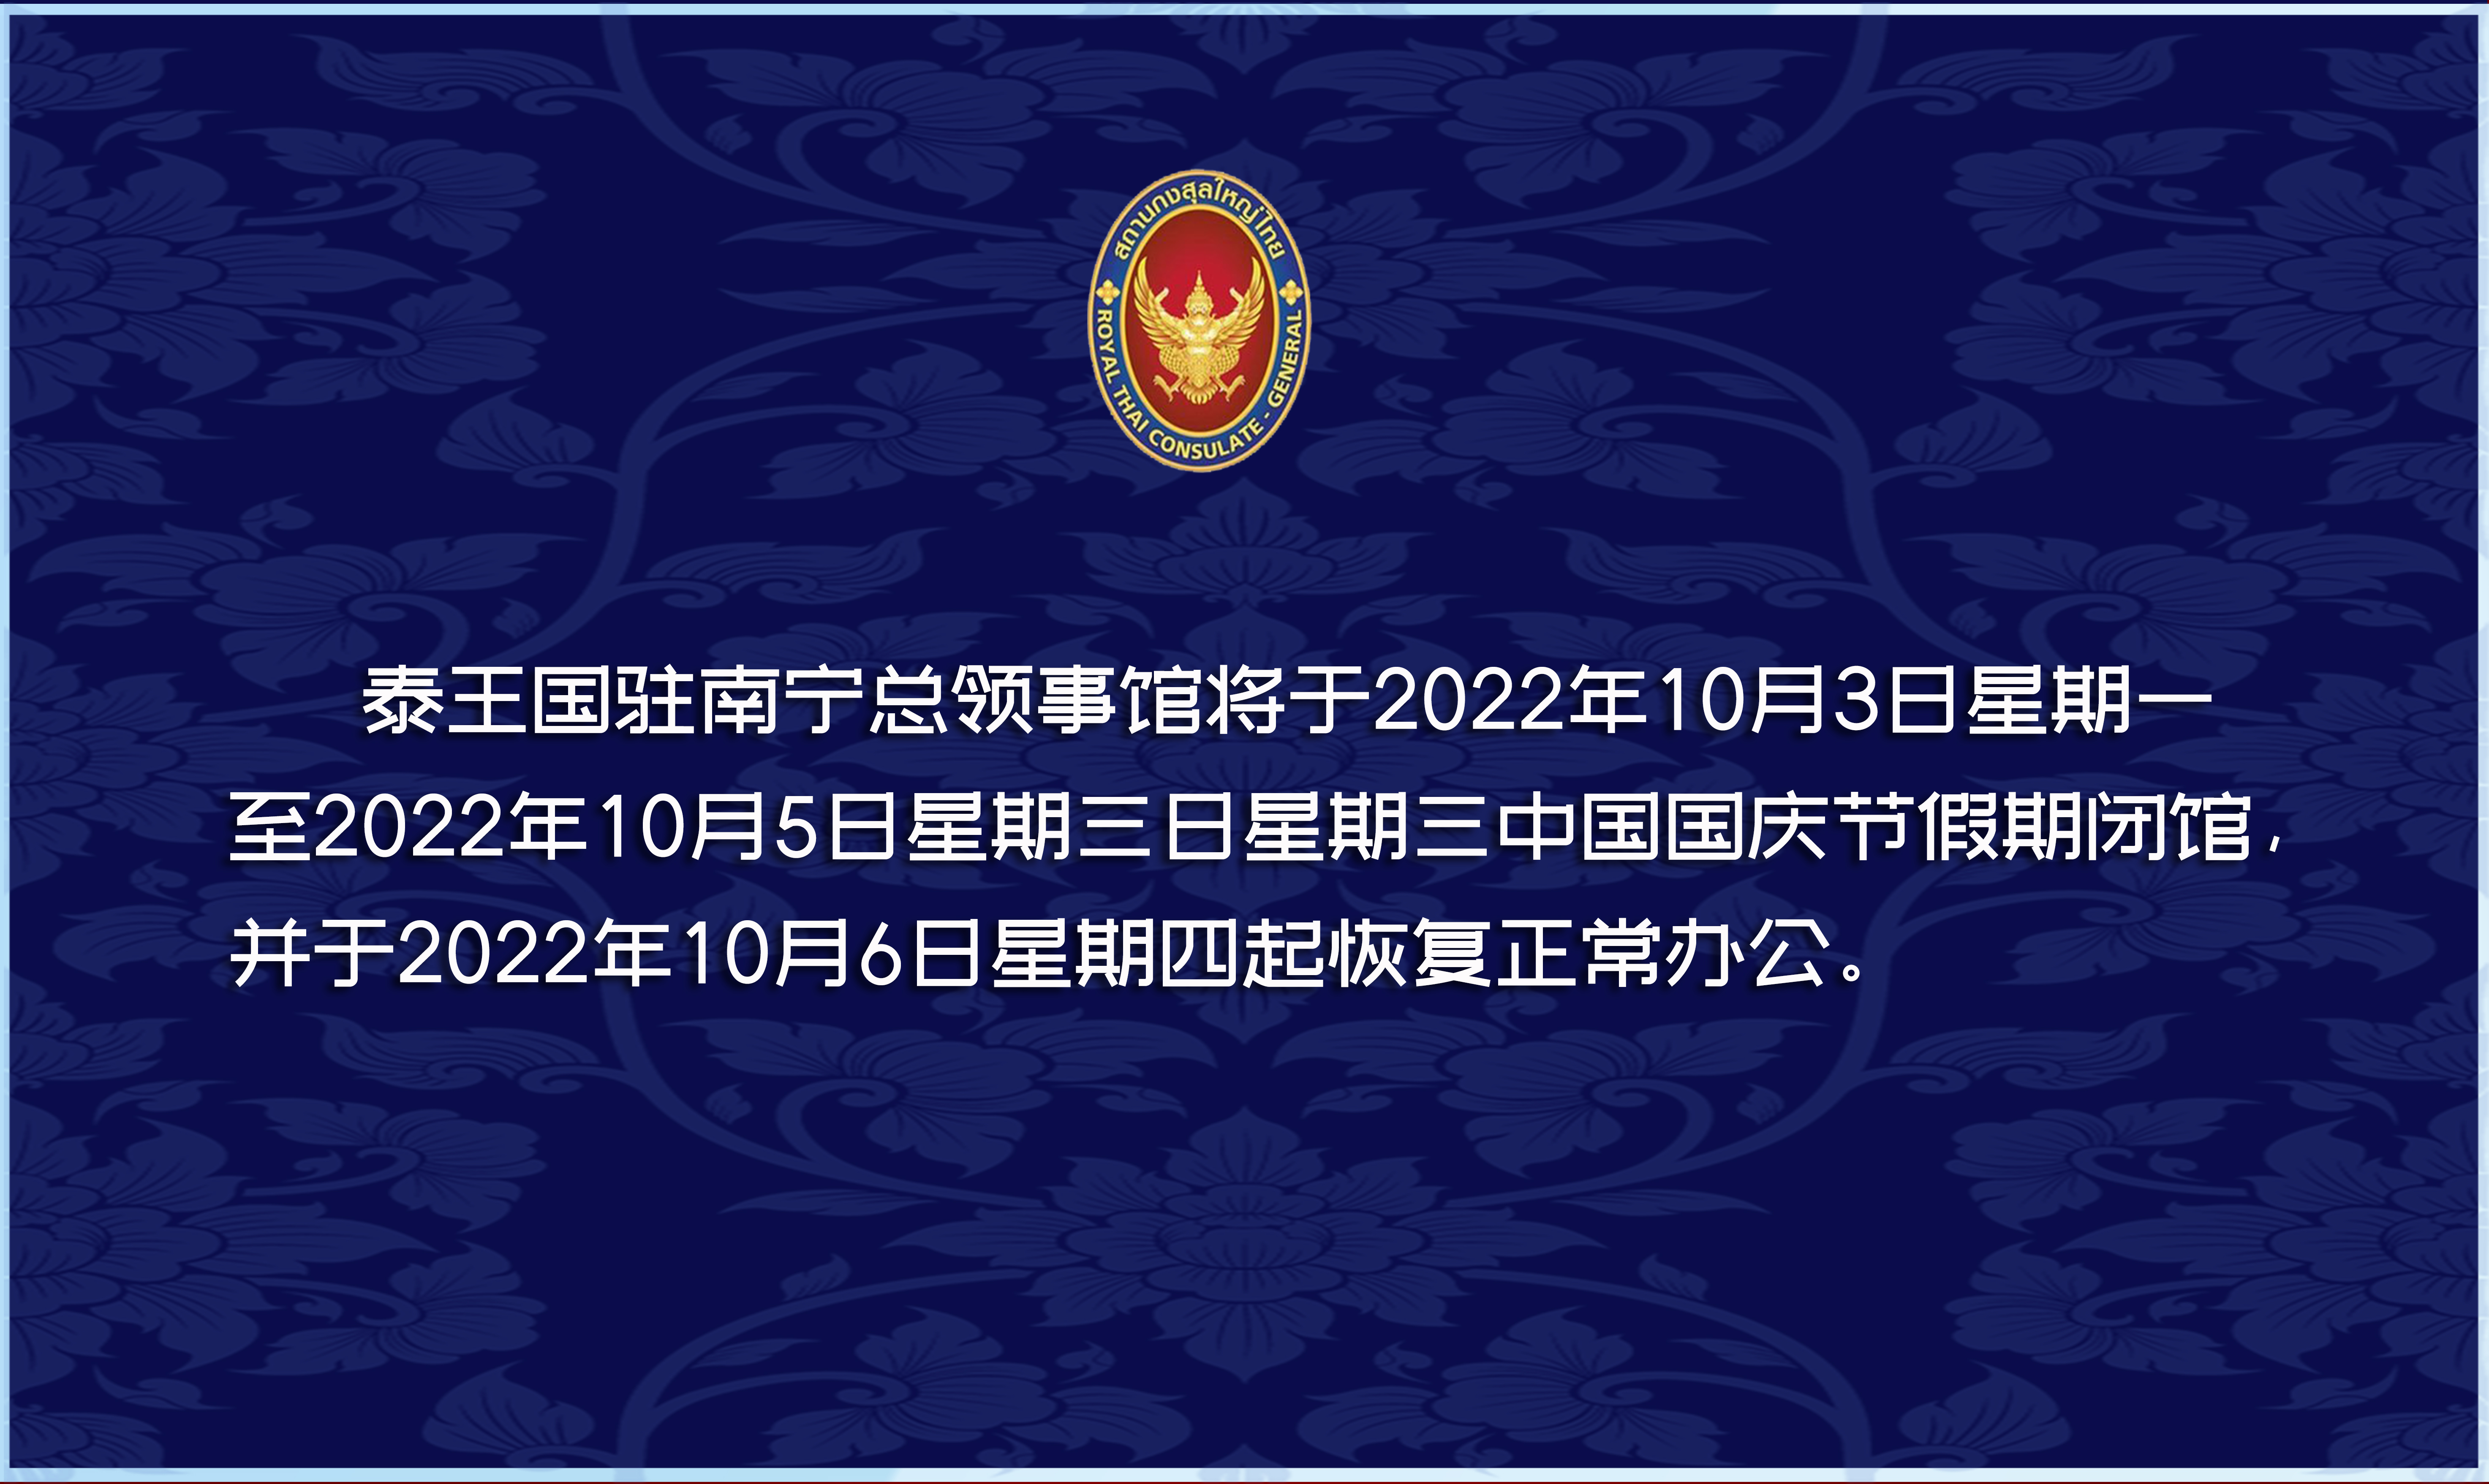 2022-09-23_-CN-